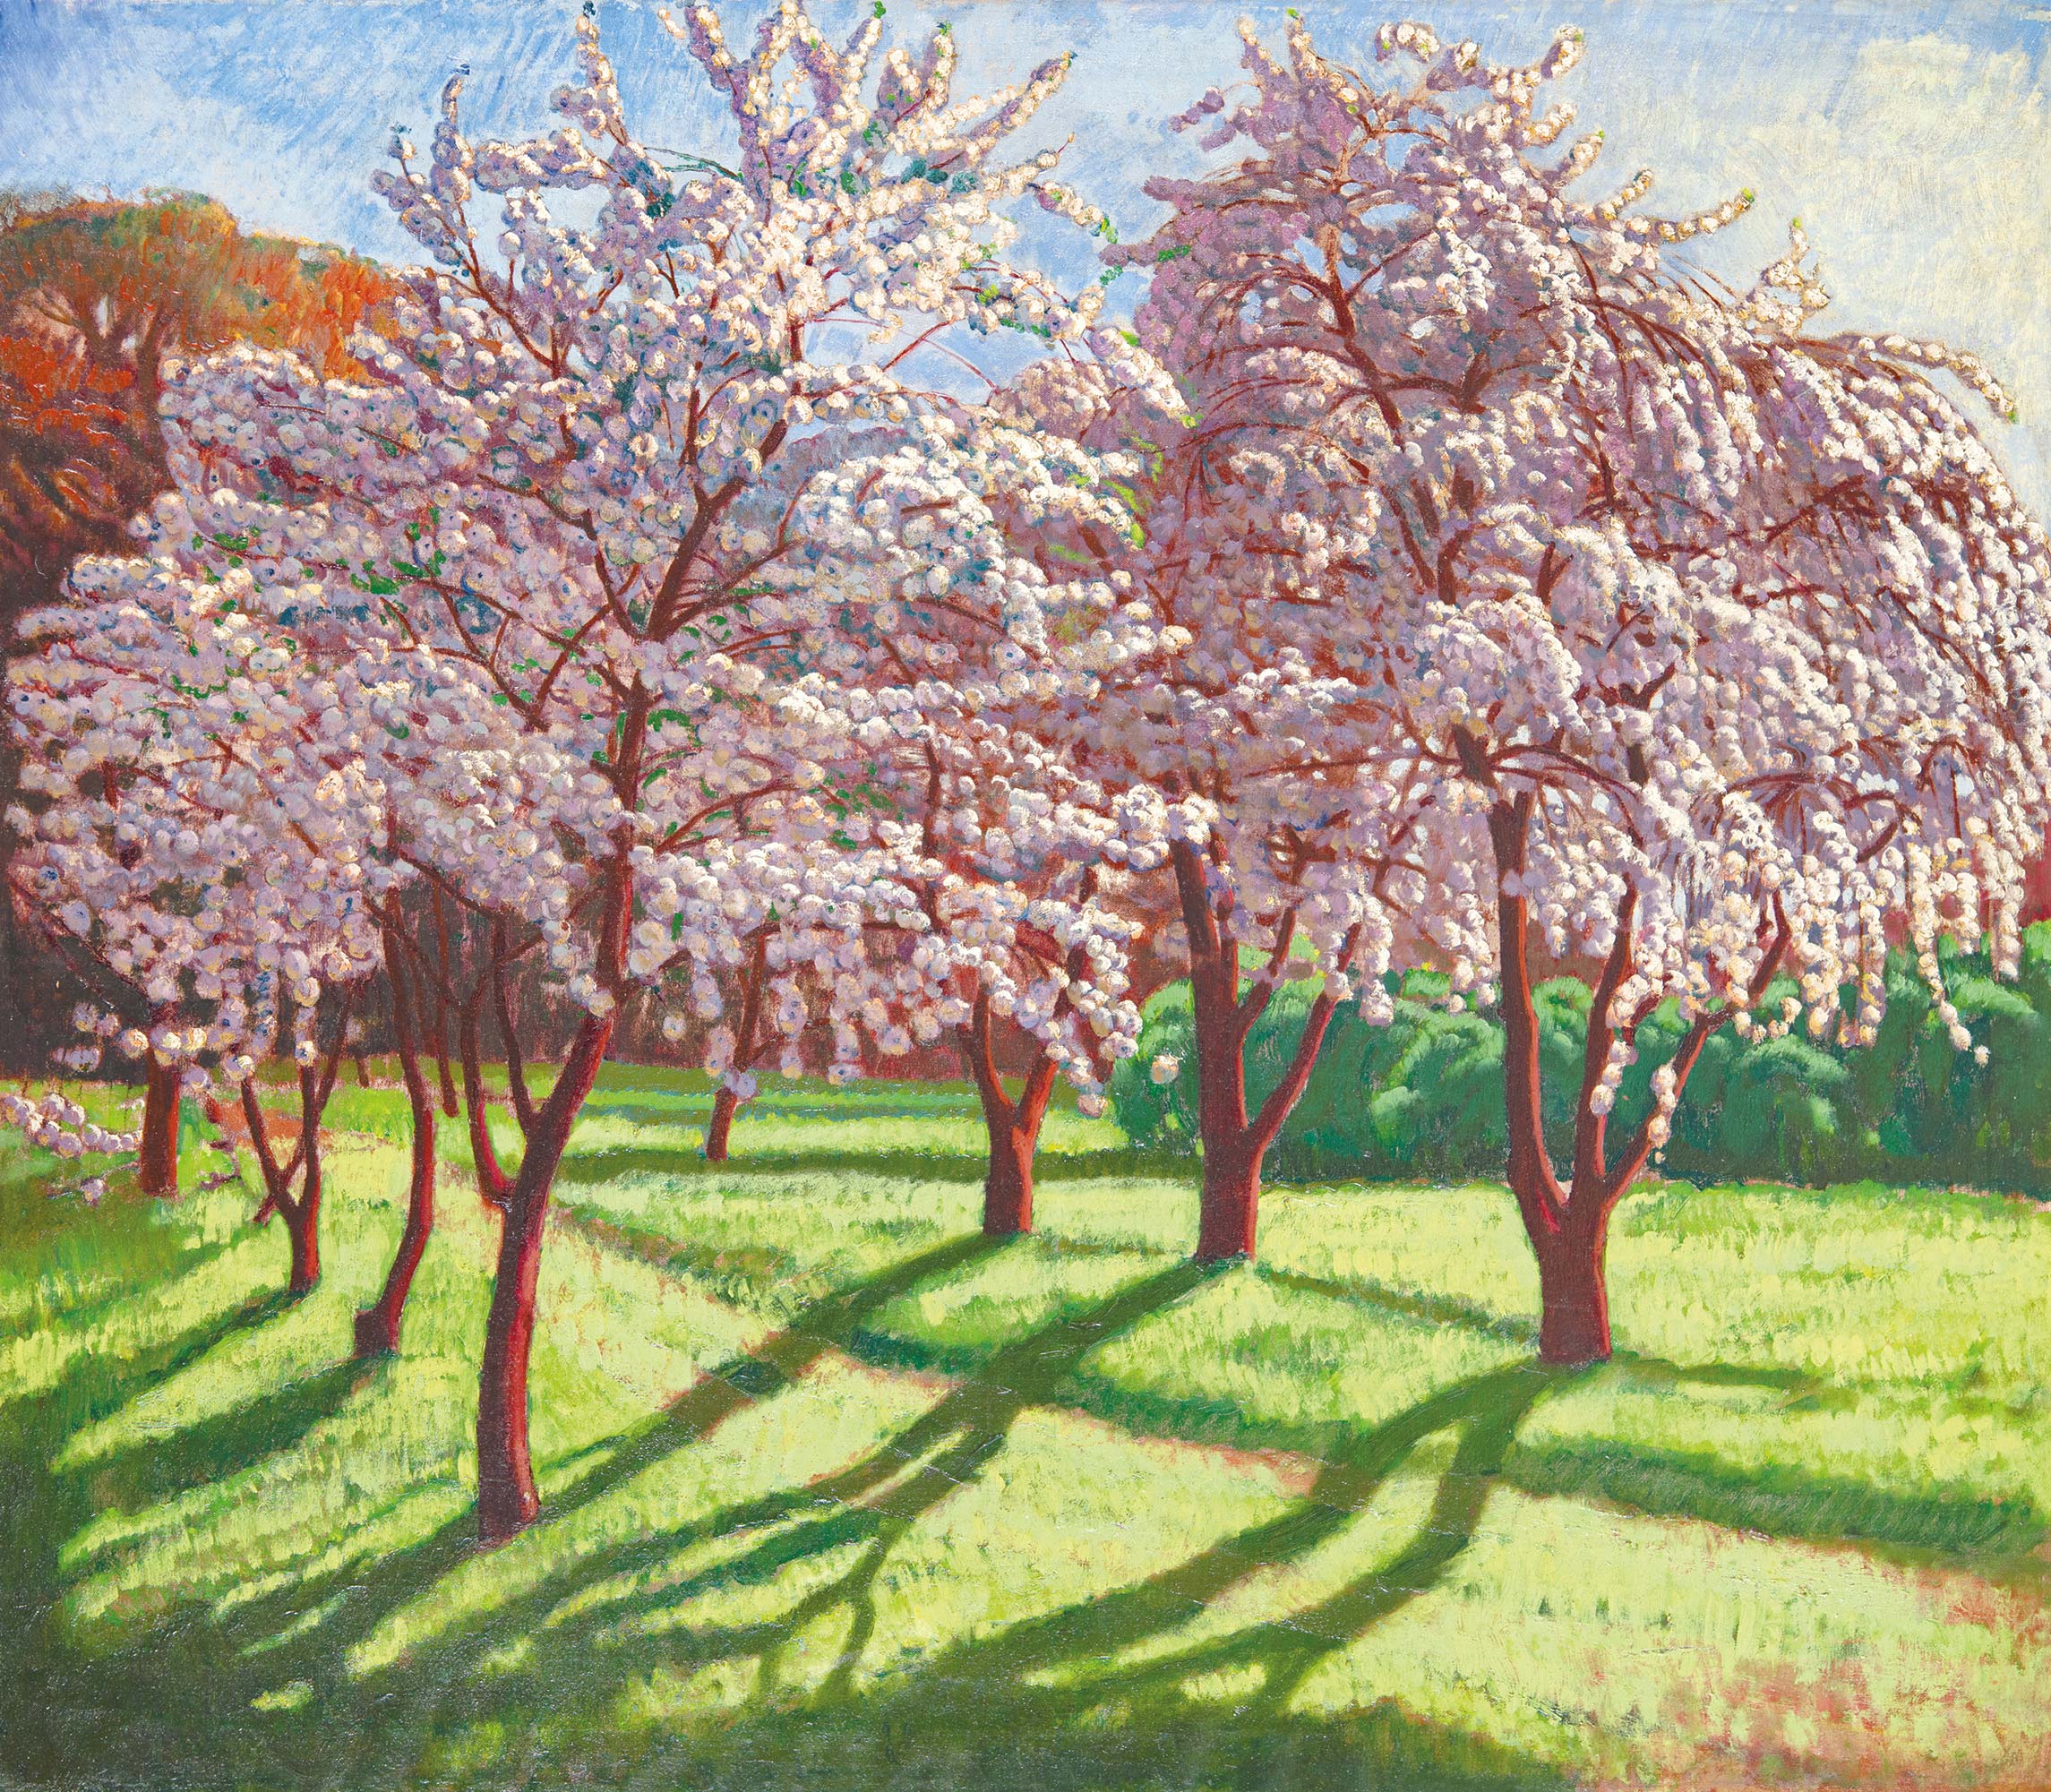 Csáky László (1888 - 1918) Cherry blossom (Blooming Fruit Trees), Kecskemét, around 1912-1914